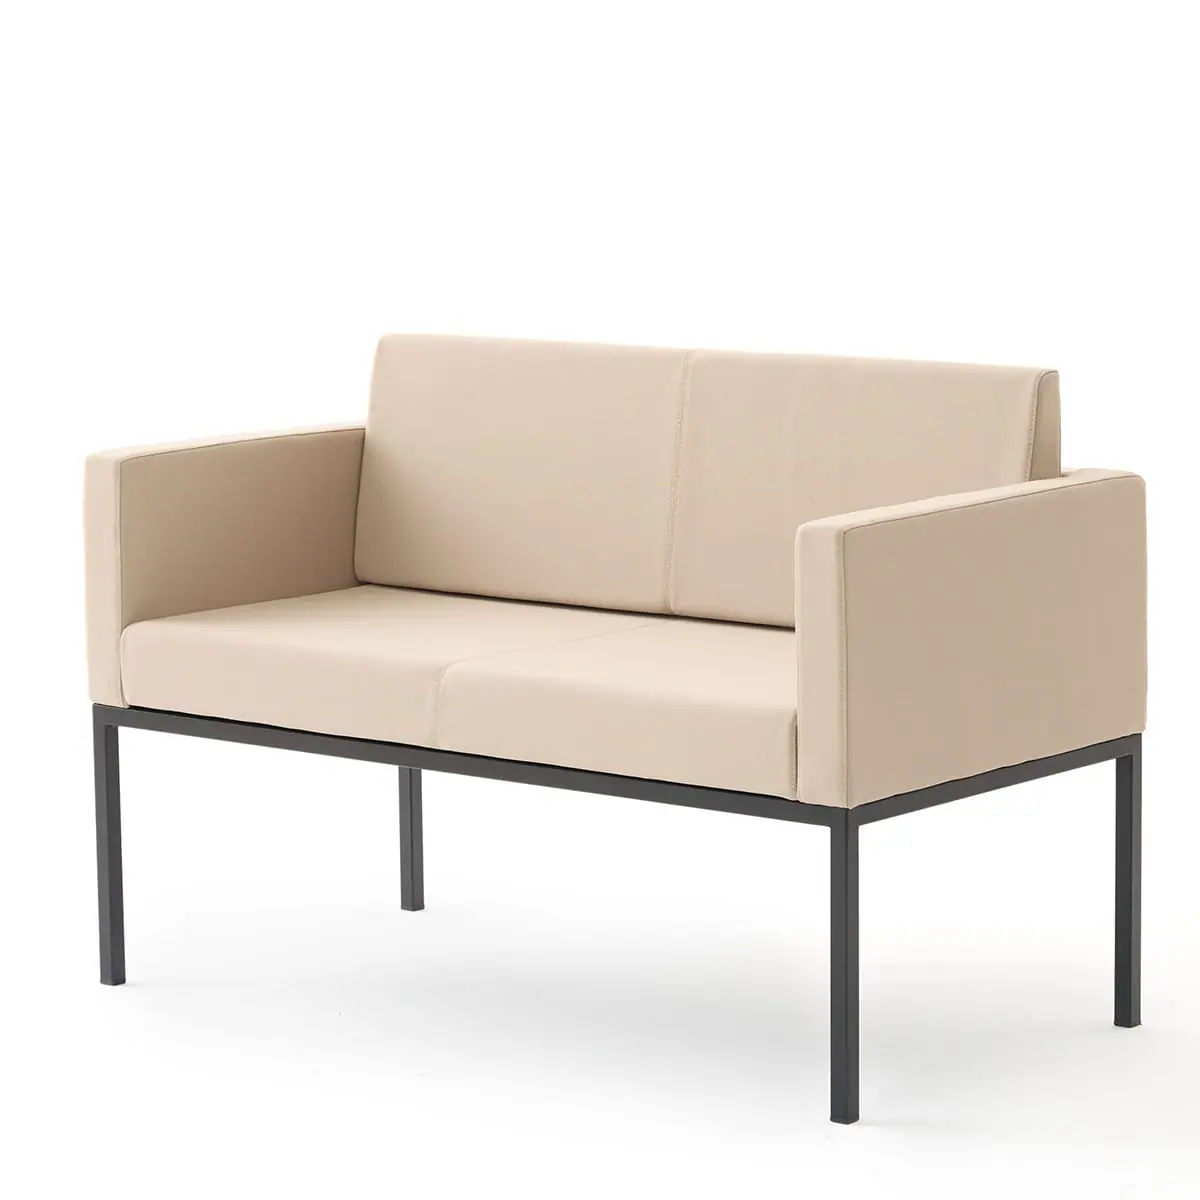 delaoliva-cubik-soft-lounge-seating-007